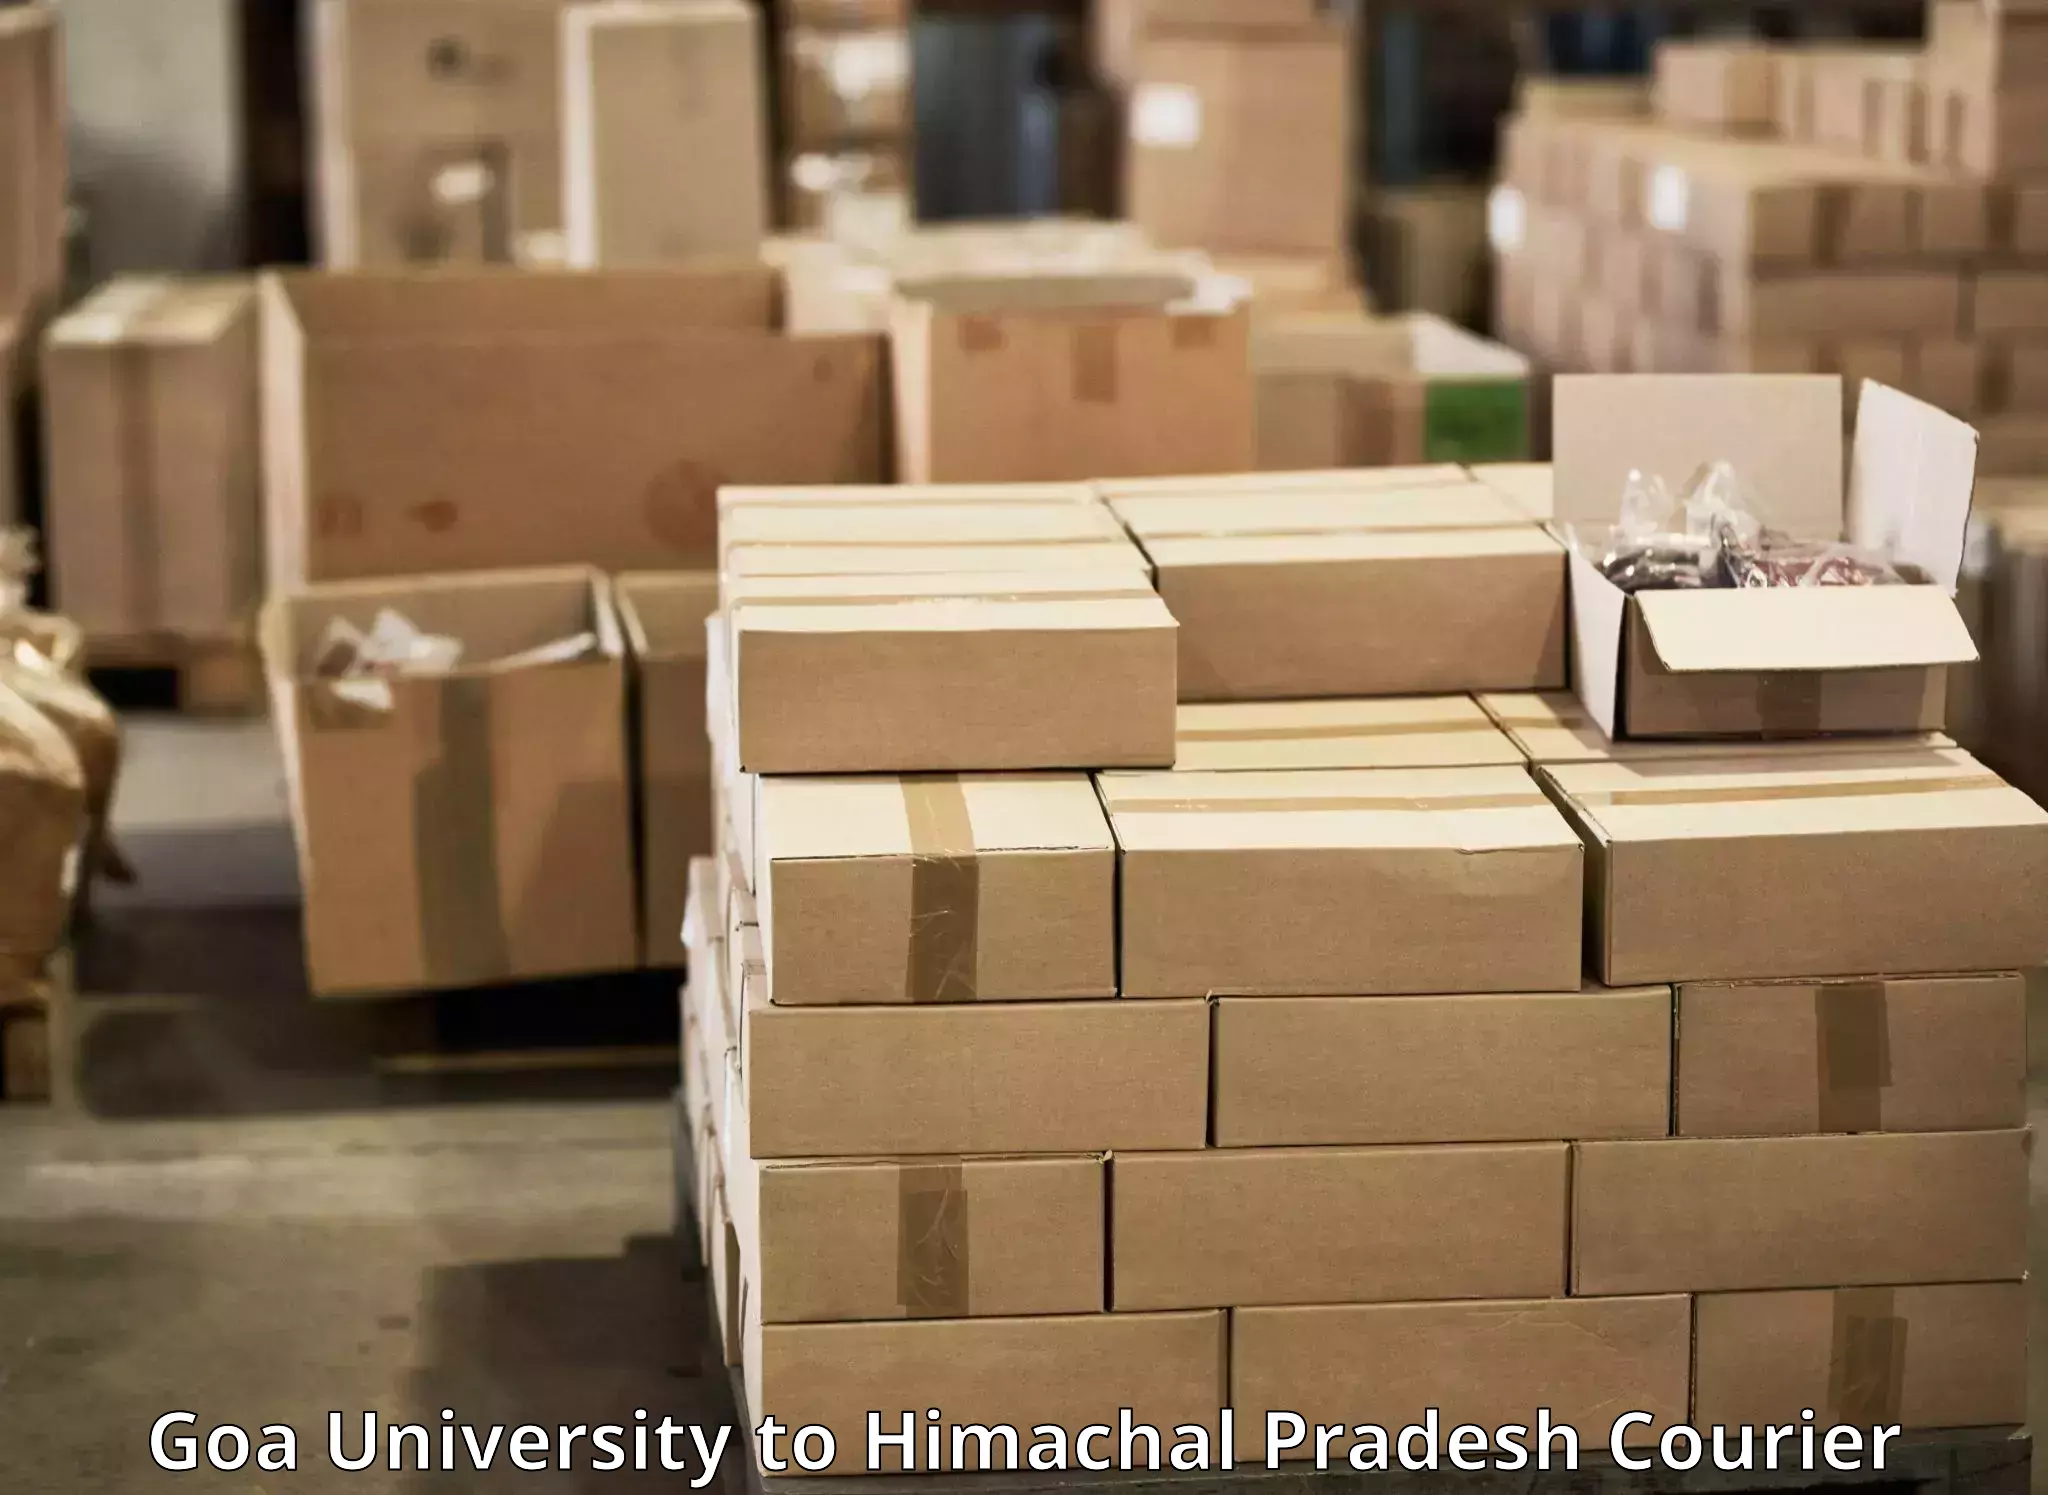 Door-to-door freight service Goa University to Kala Amb